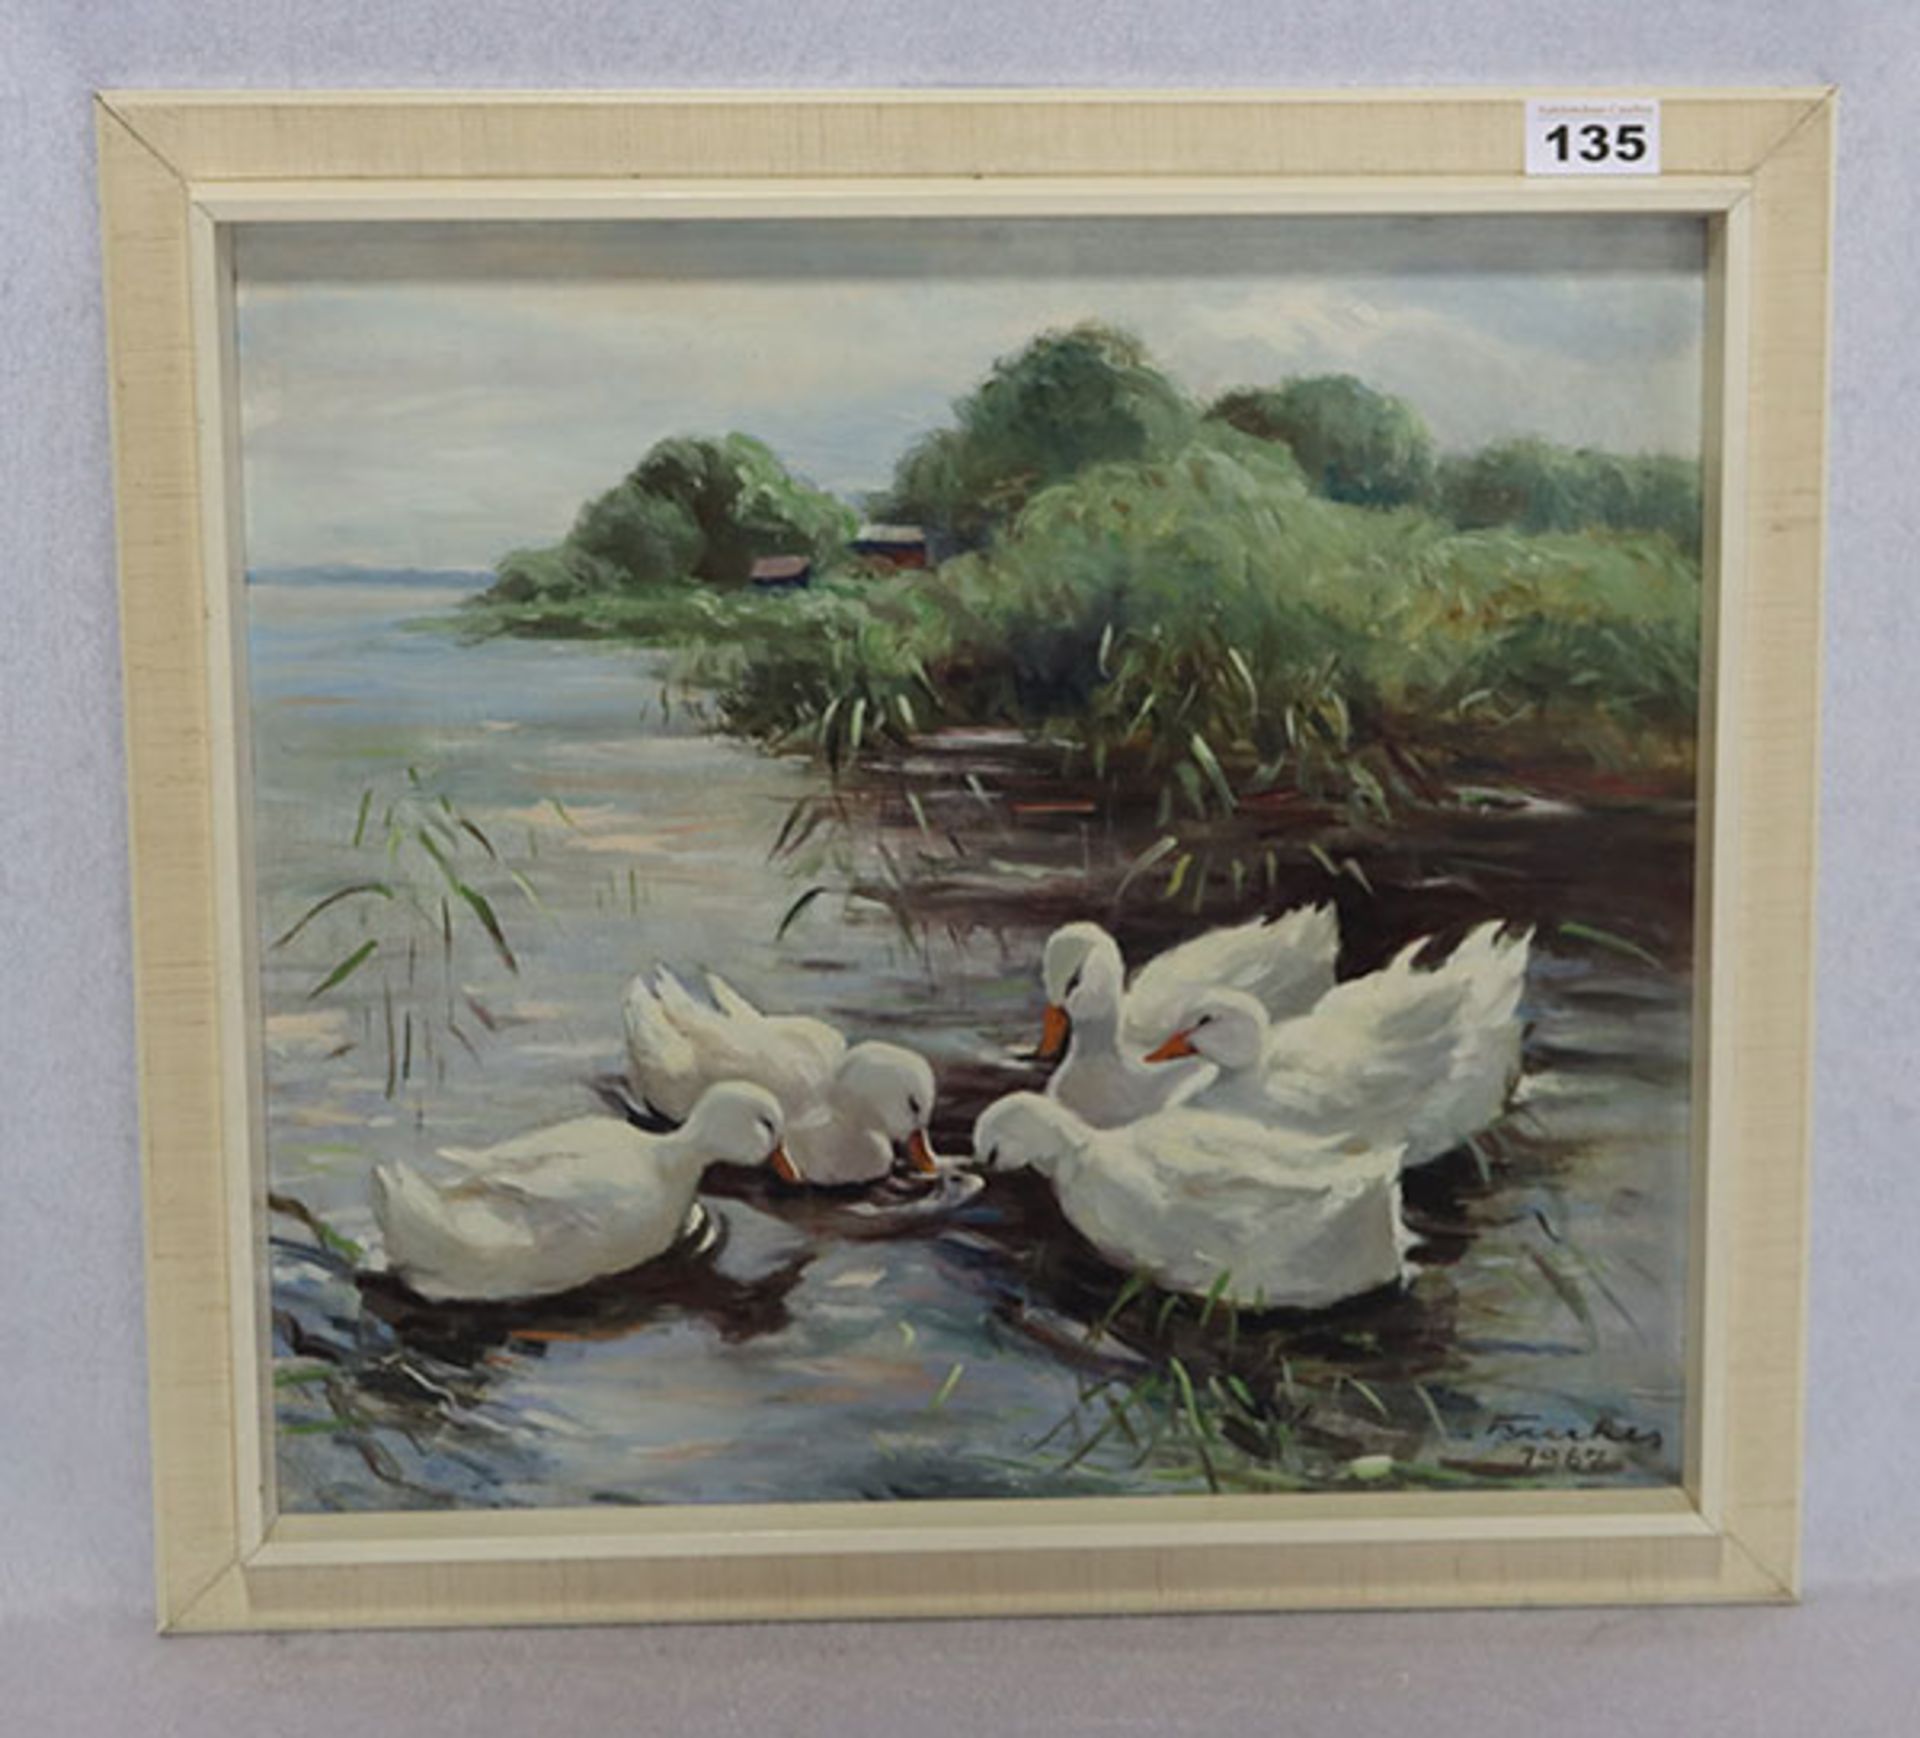 Gemälde ÖL/Hartfaser 'Enten am Ufer', signiert Brerkes ? 1967, gerahmt, Rahmen bestossen, incl.